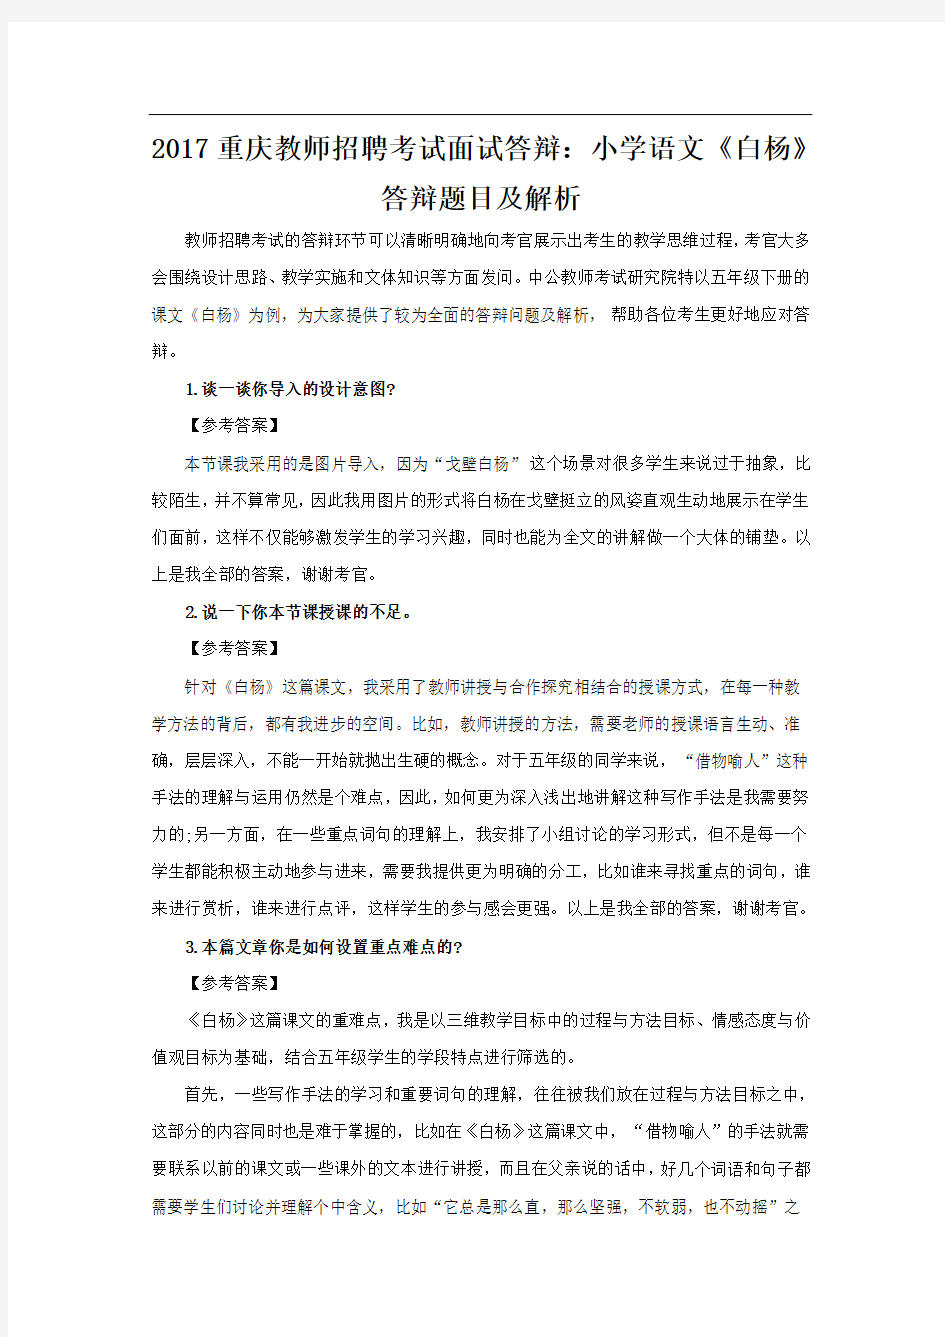 重庆教师招聘考试面试答辩：小学语文《白杨》答辩题目及解析